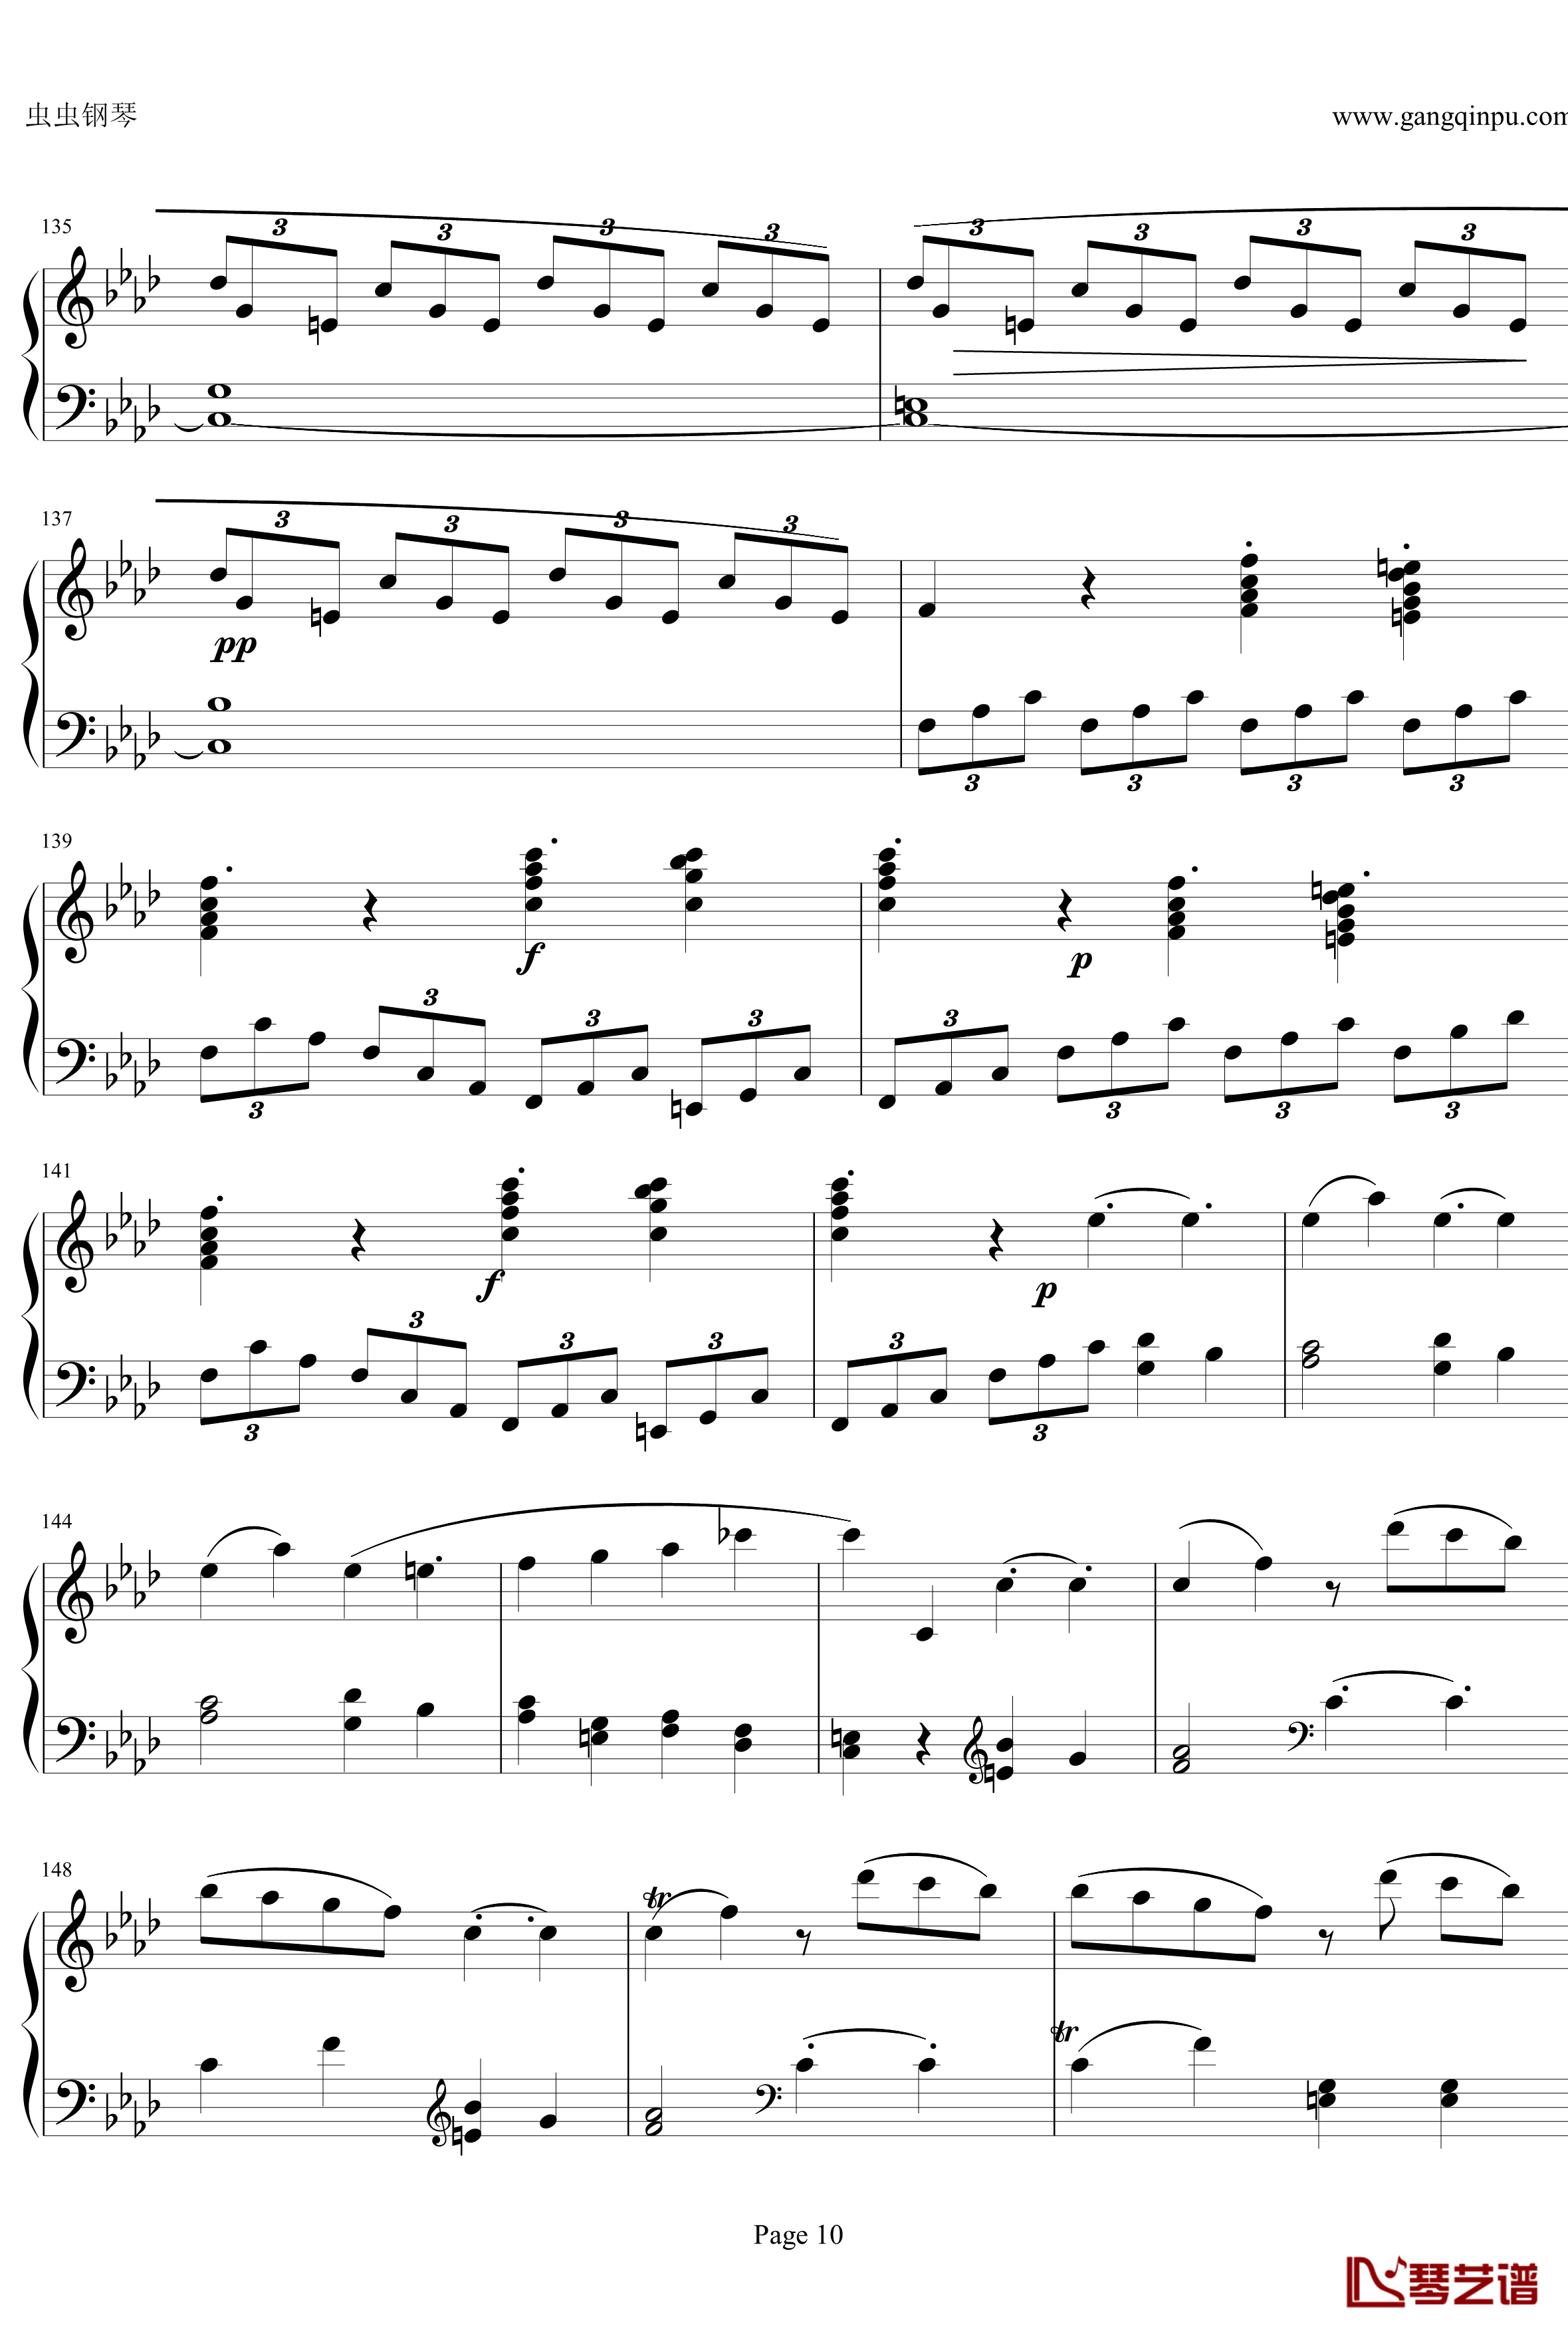 贝多芬第一钢琴奏鸣曲钢琴谱-作品2，第一号-贝多芬-beethoven10